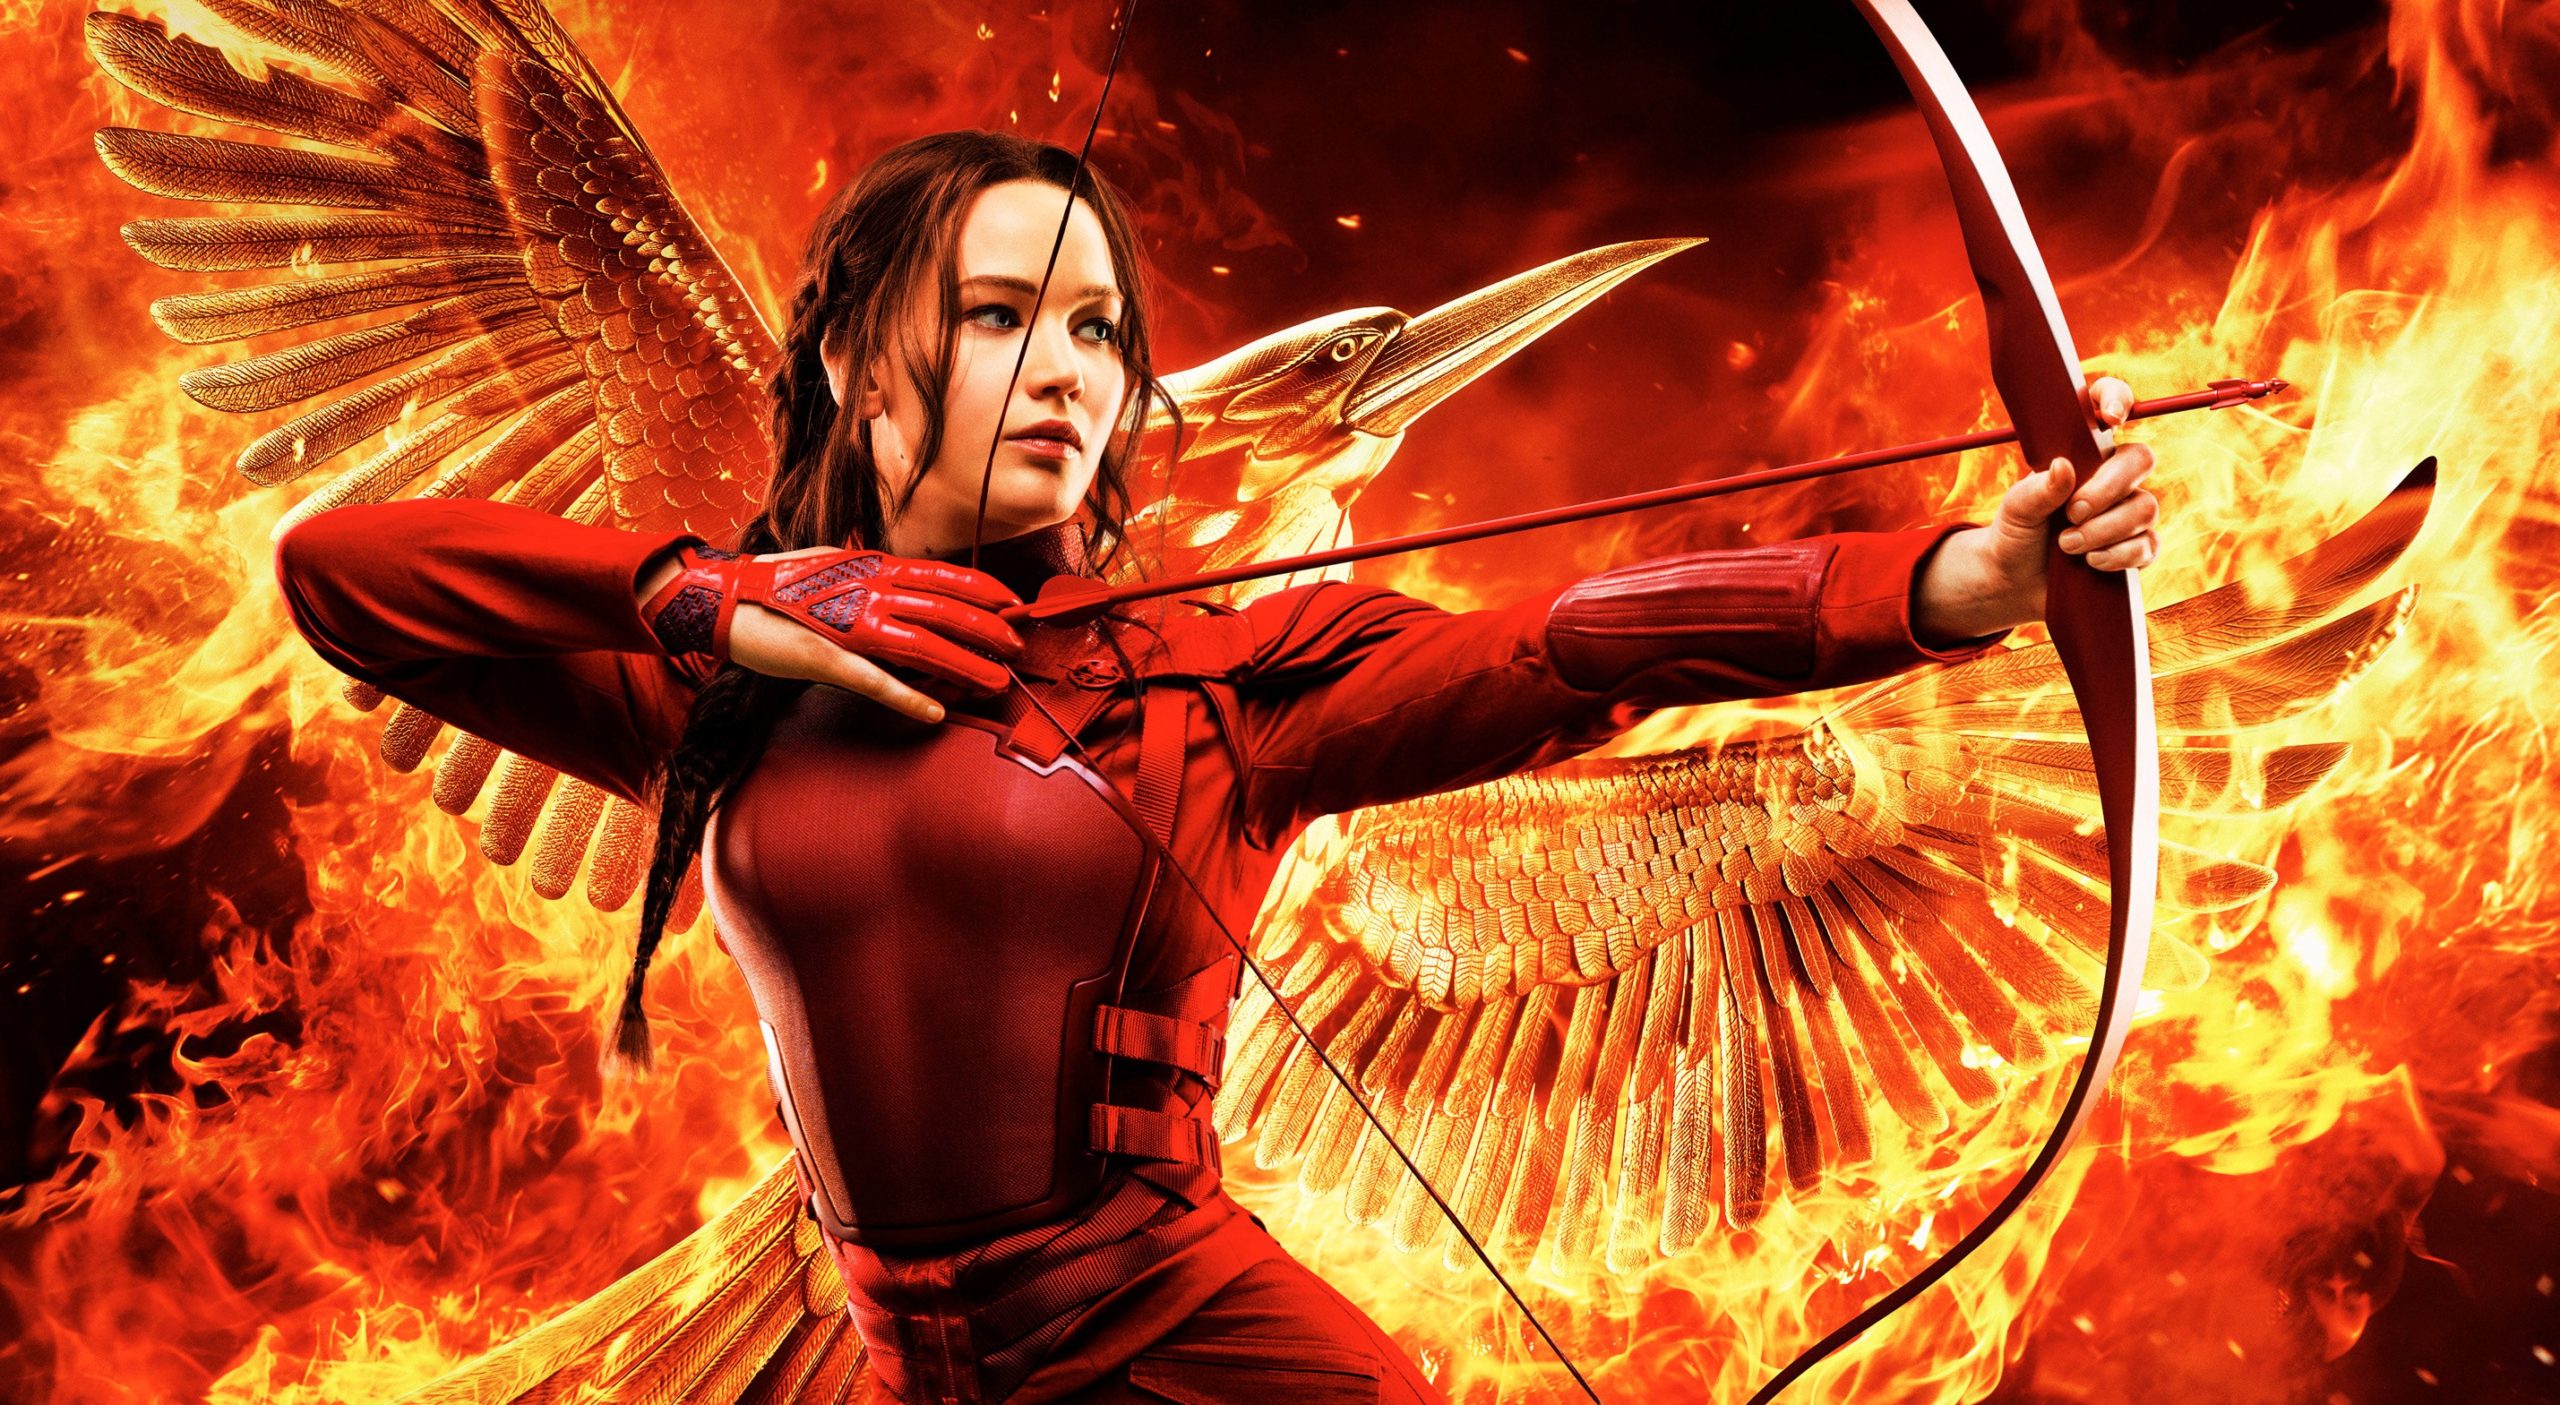 A imagem mostra Katniss com um macacão vermelho. Ela está segurando um arco e flecha pronto para ser disparado e seu cabelo, castanho escuro, está penteado em uma trança lateral. Ao fundo vemos uma ave, o tordo, em chamas.